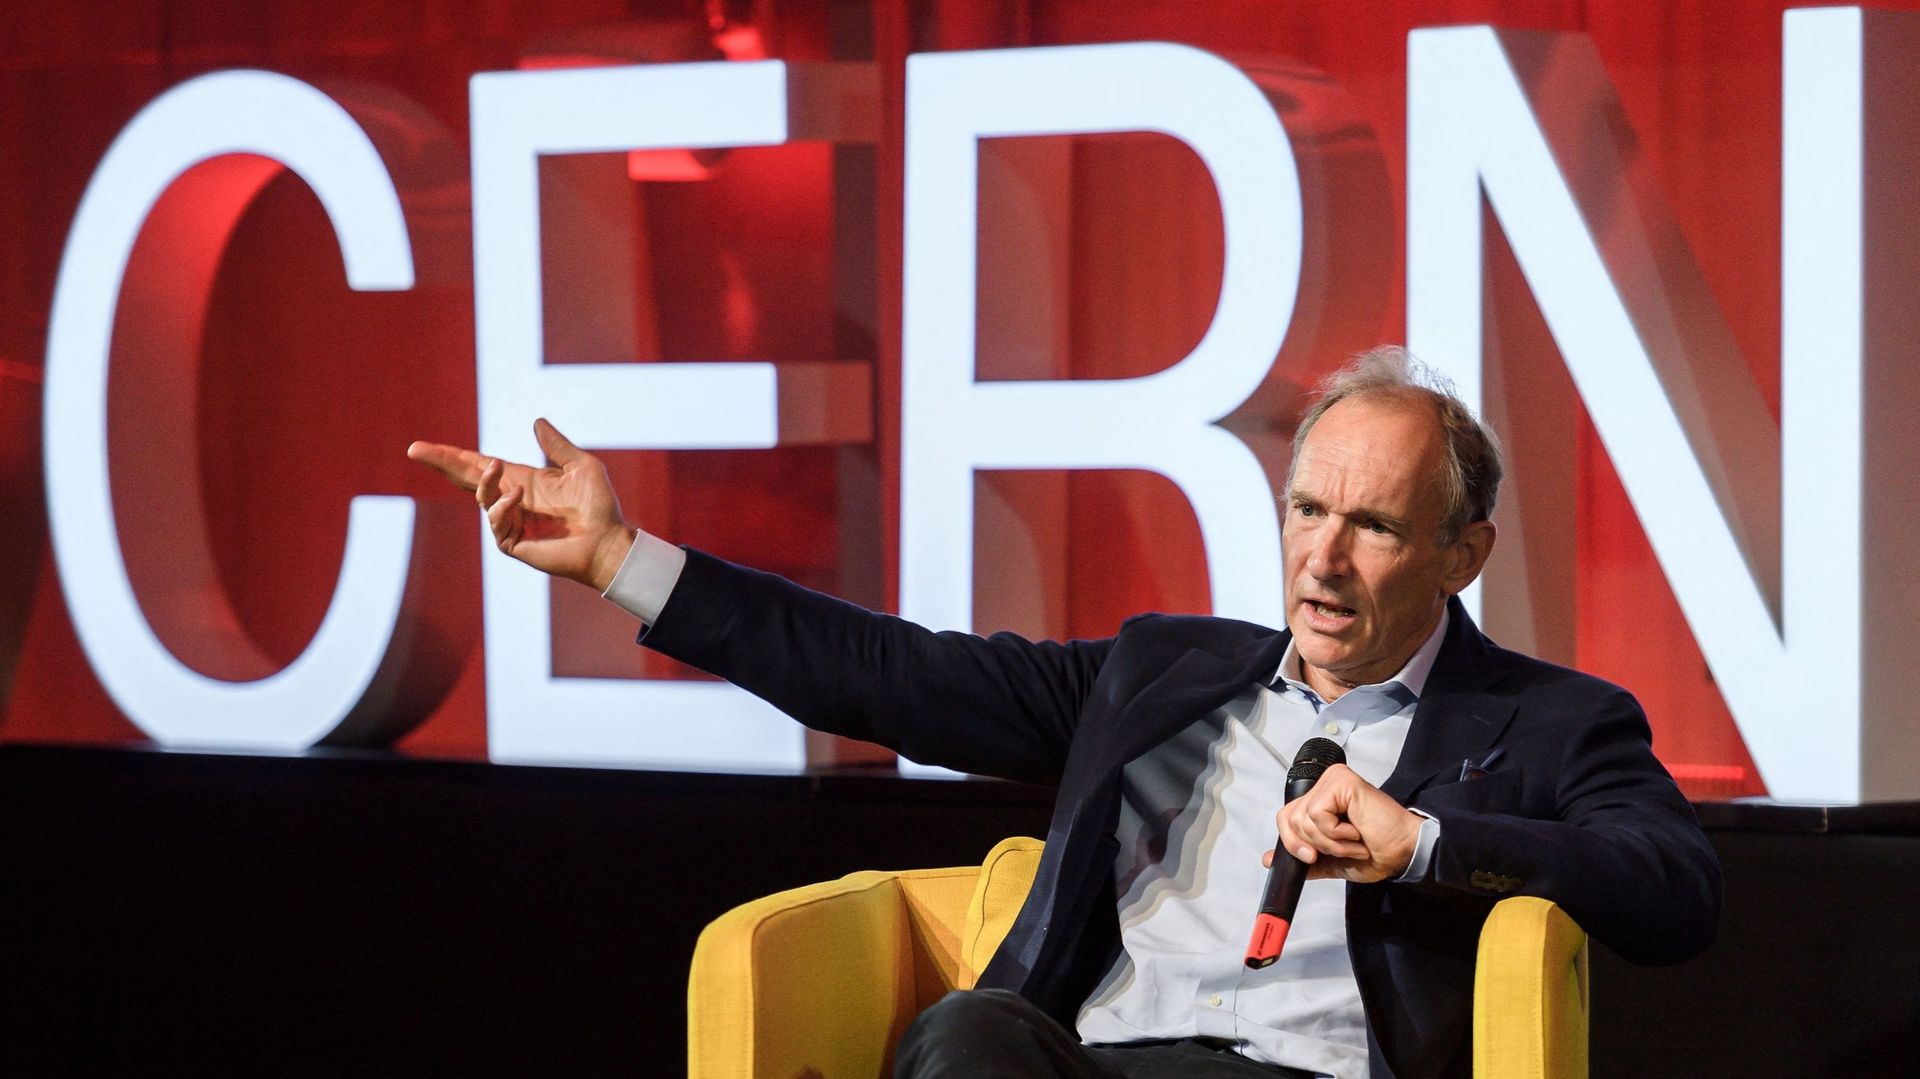 Tim Berners-Lee en 2009, au CERN, lors d’une conférence sur les 30 ans du web.